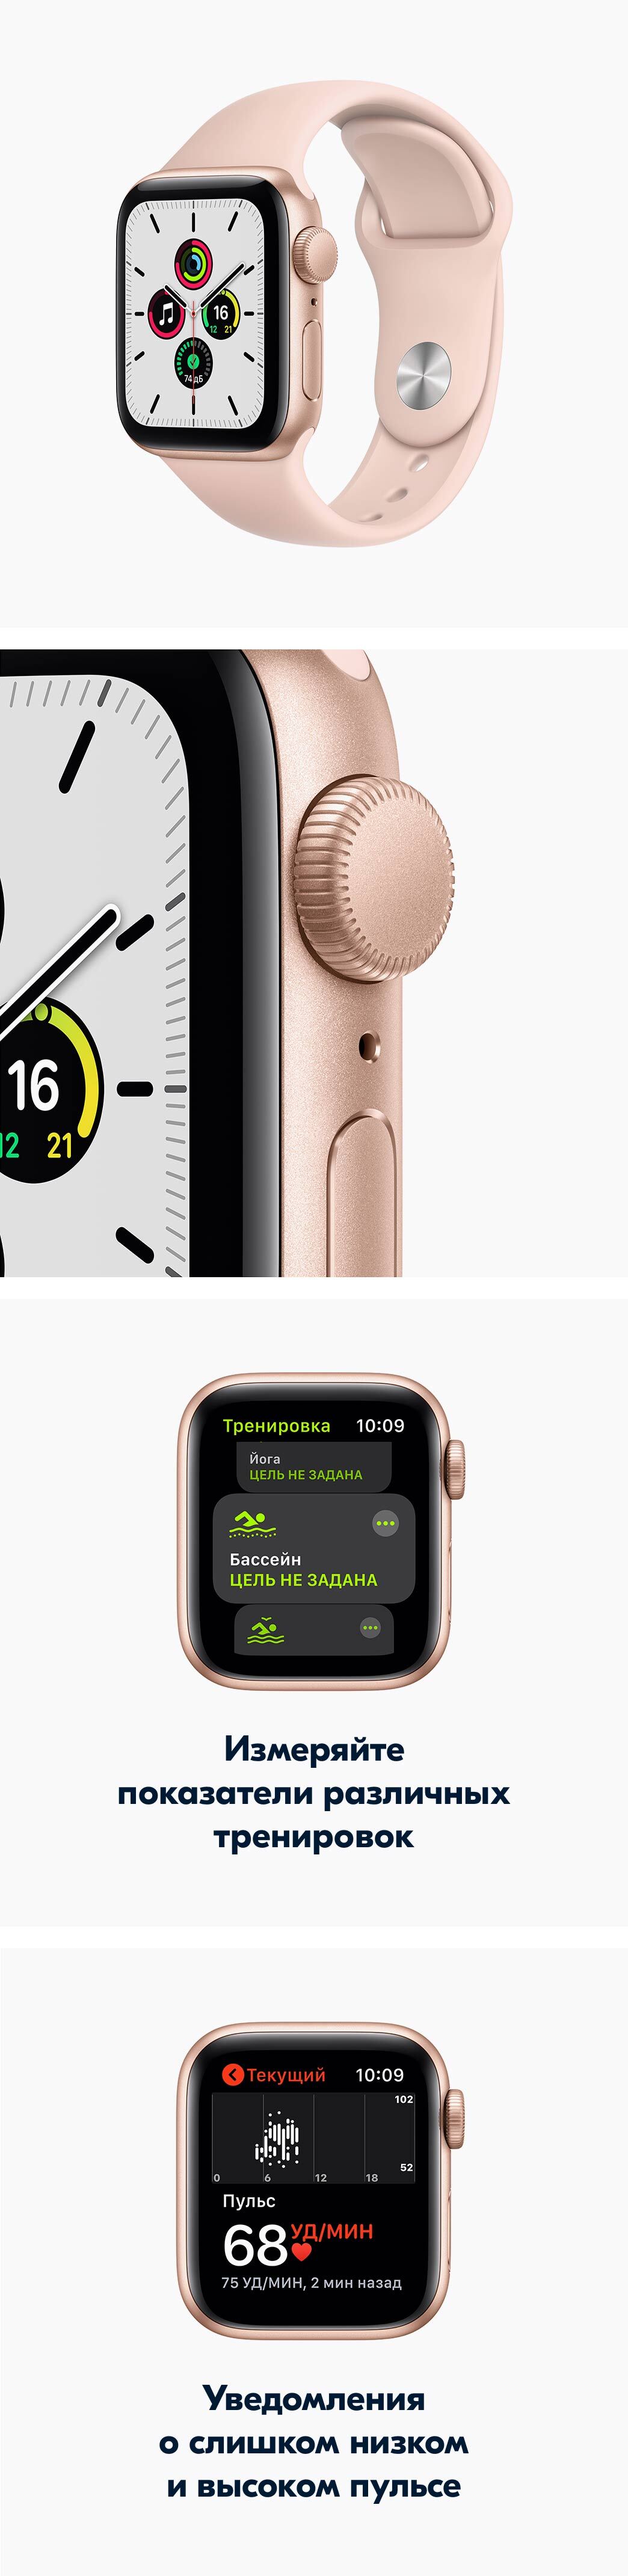 Купить смарт-часы Apple Watch SE, экран 1.57